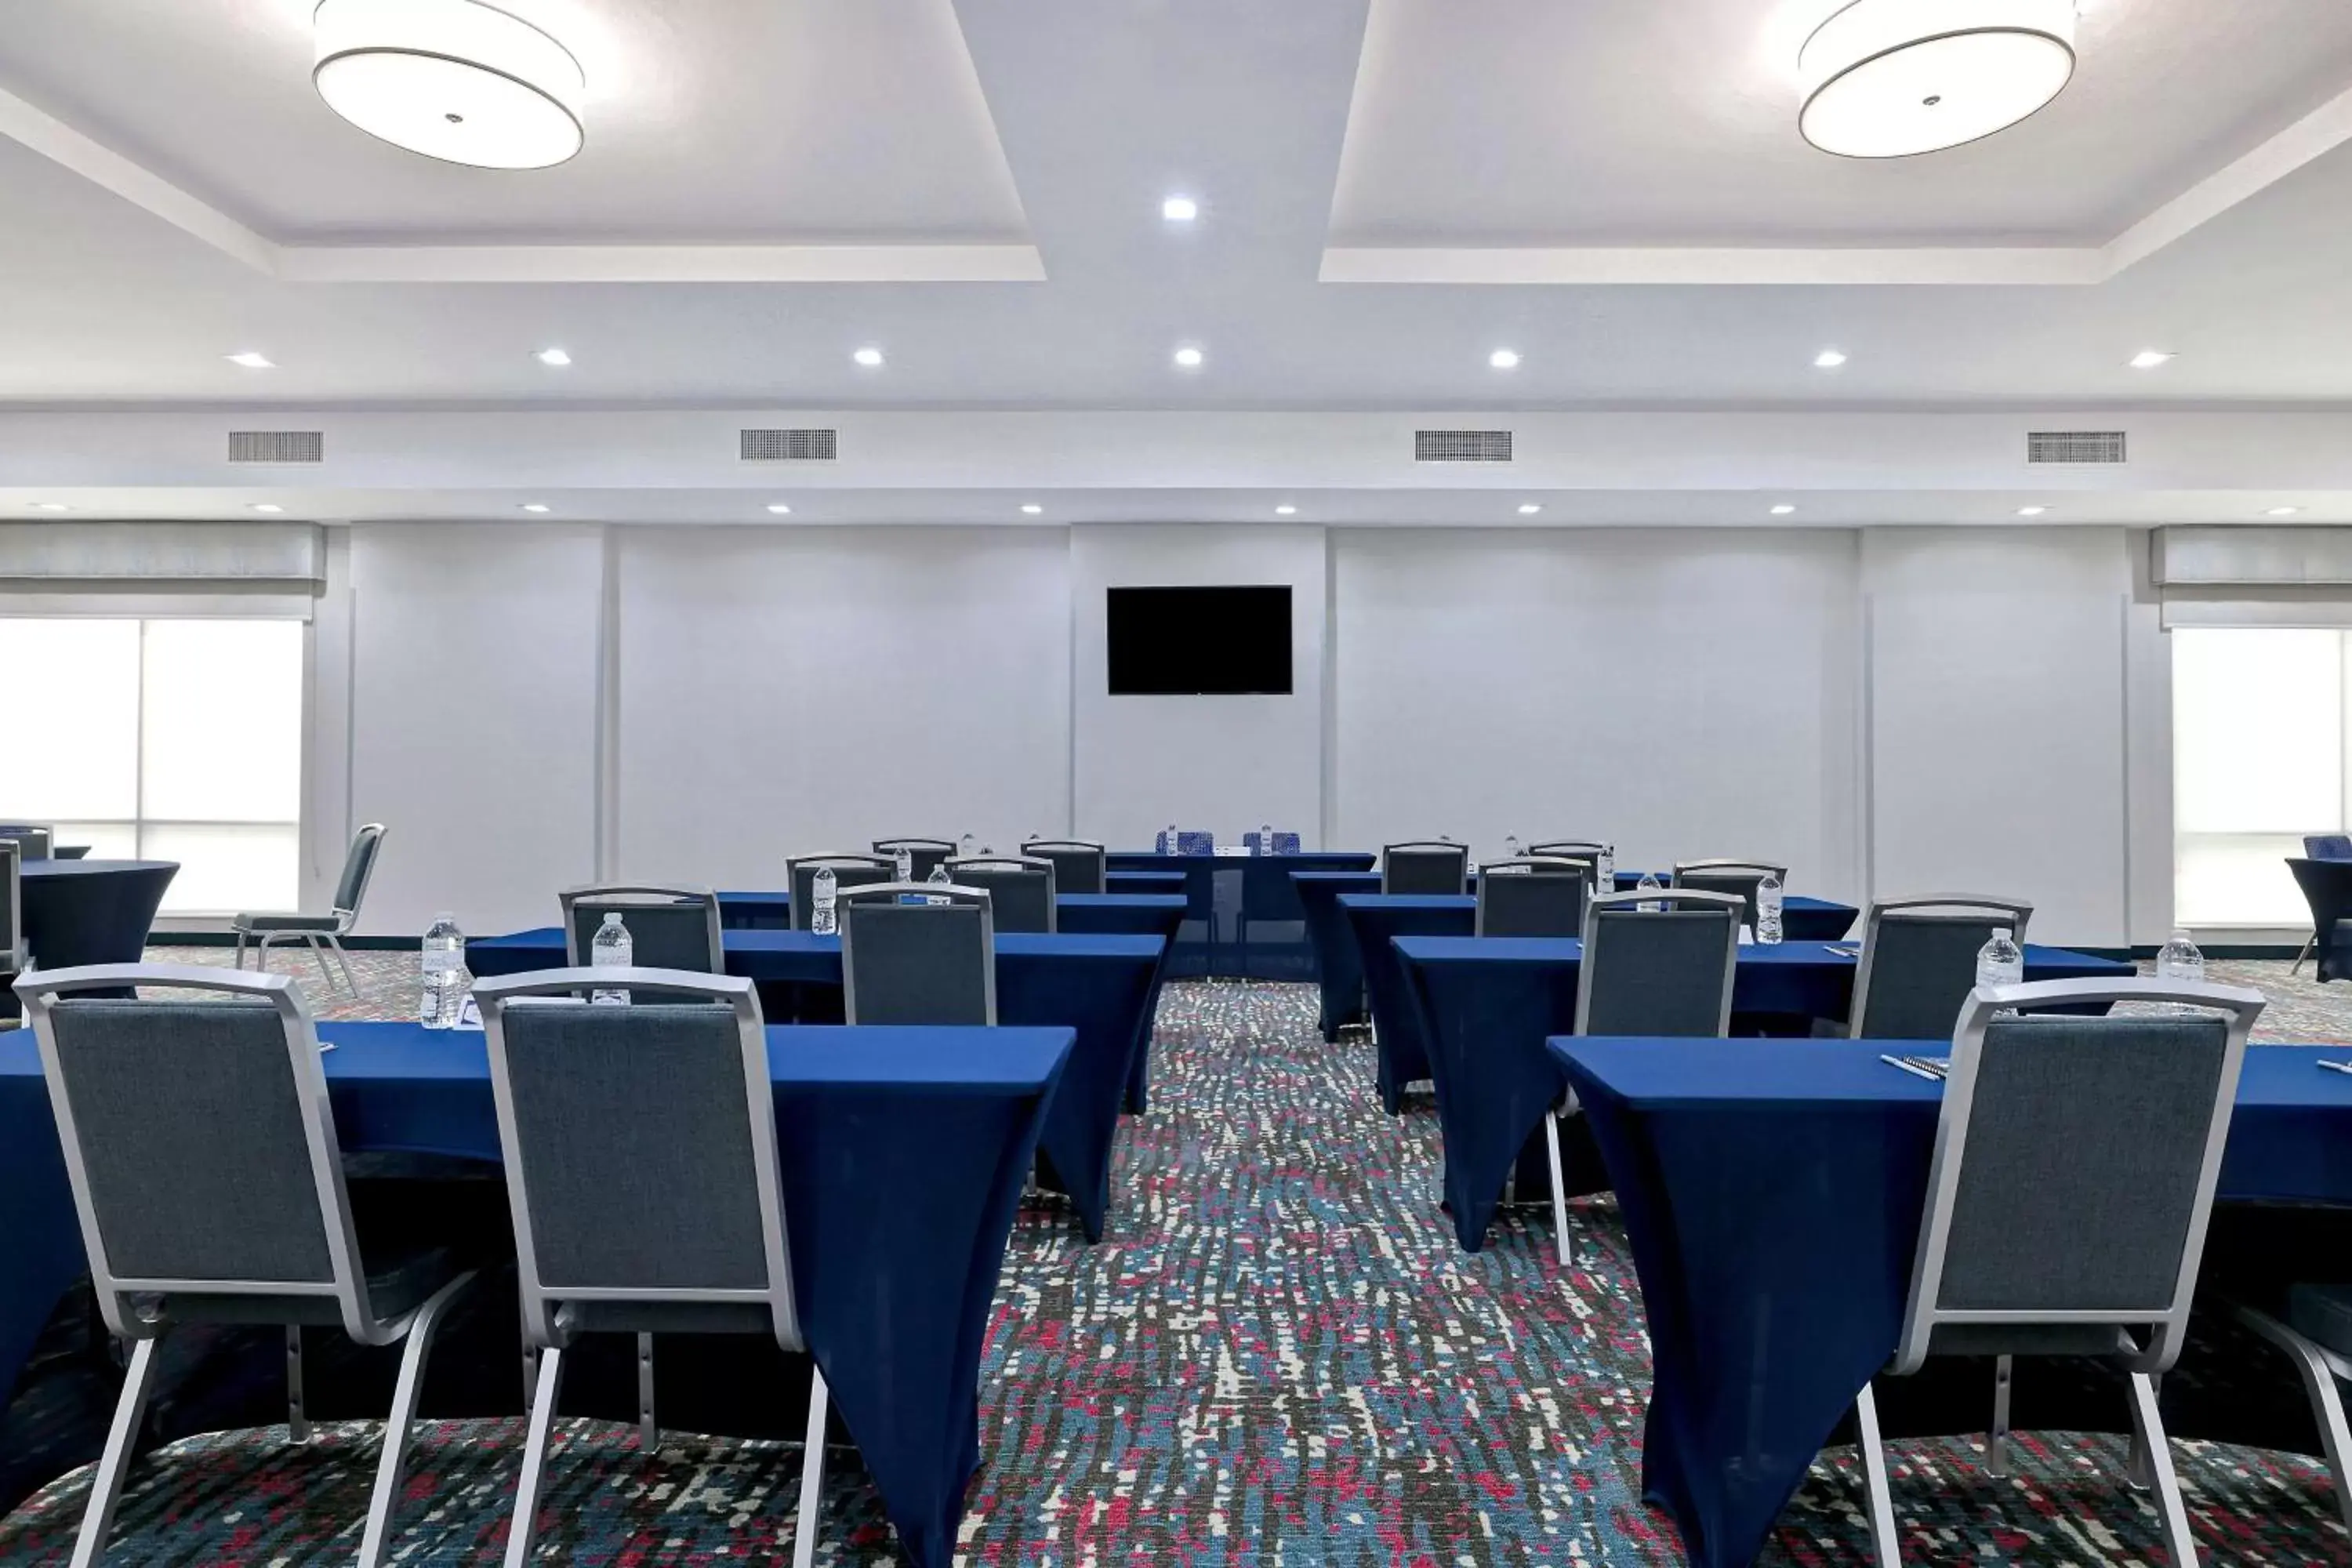 Meeting/conference room in Hampton Inn & Suites Houston East Beltway 8, Tx